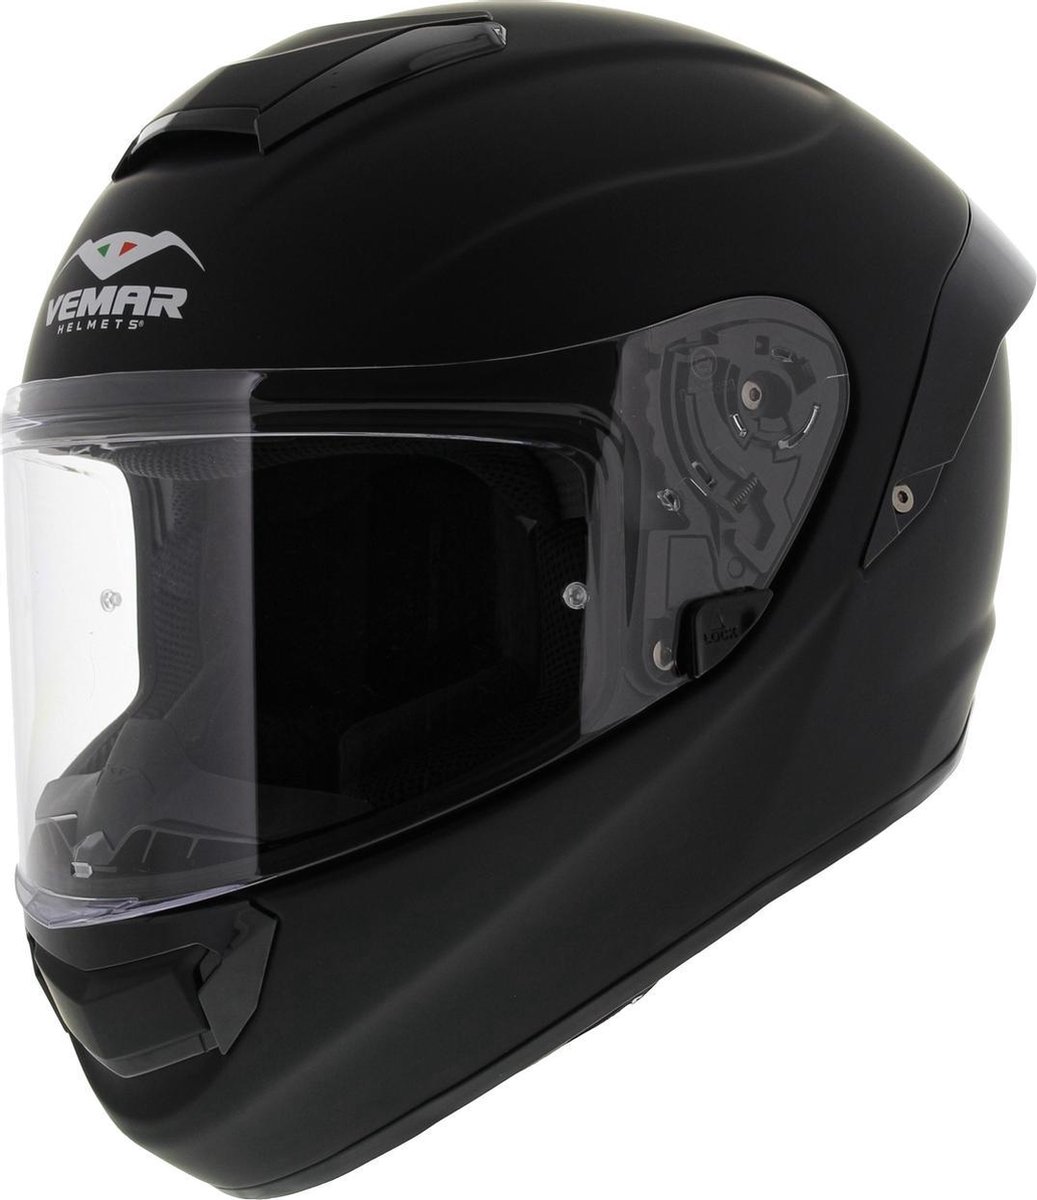 Simpson Helmet ECE22.06 Venom Matt Black S - Maat S - Helm